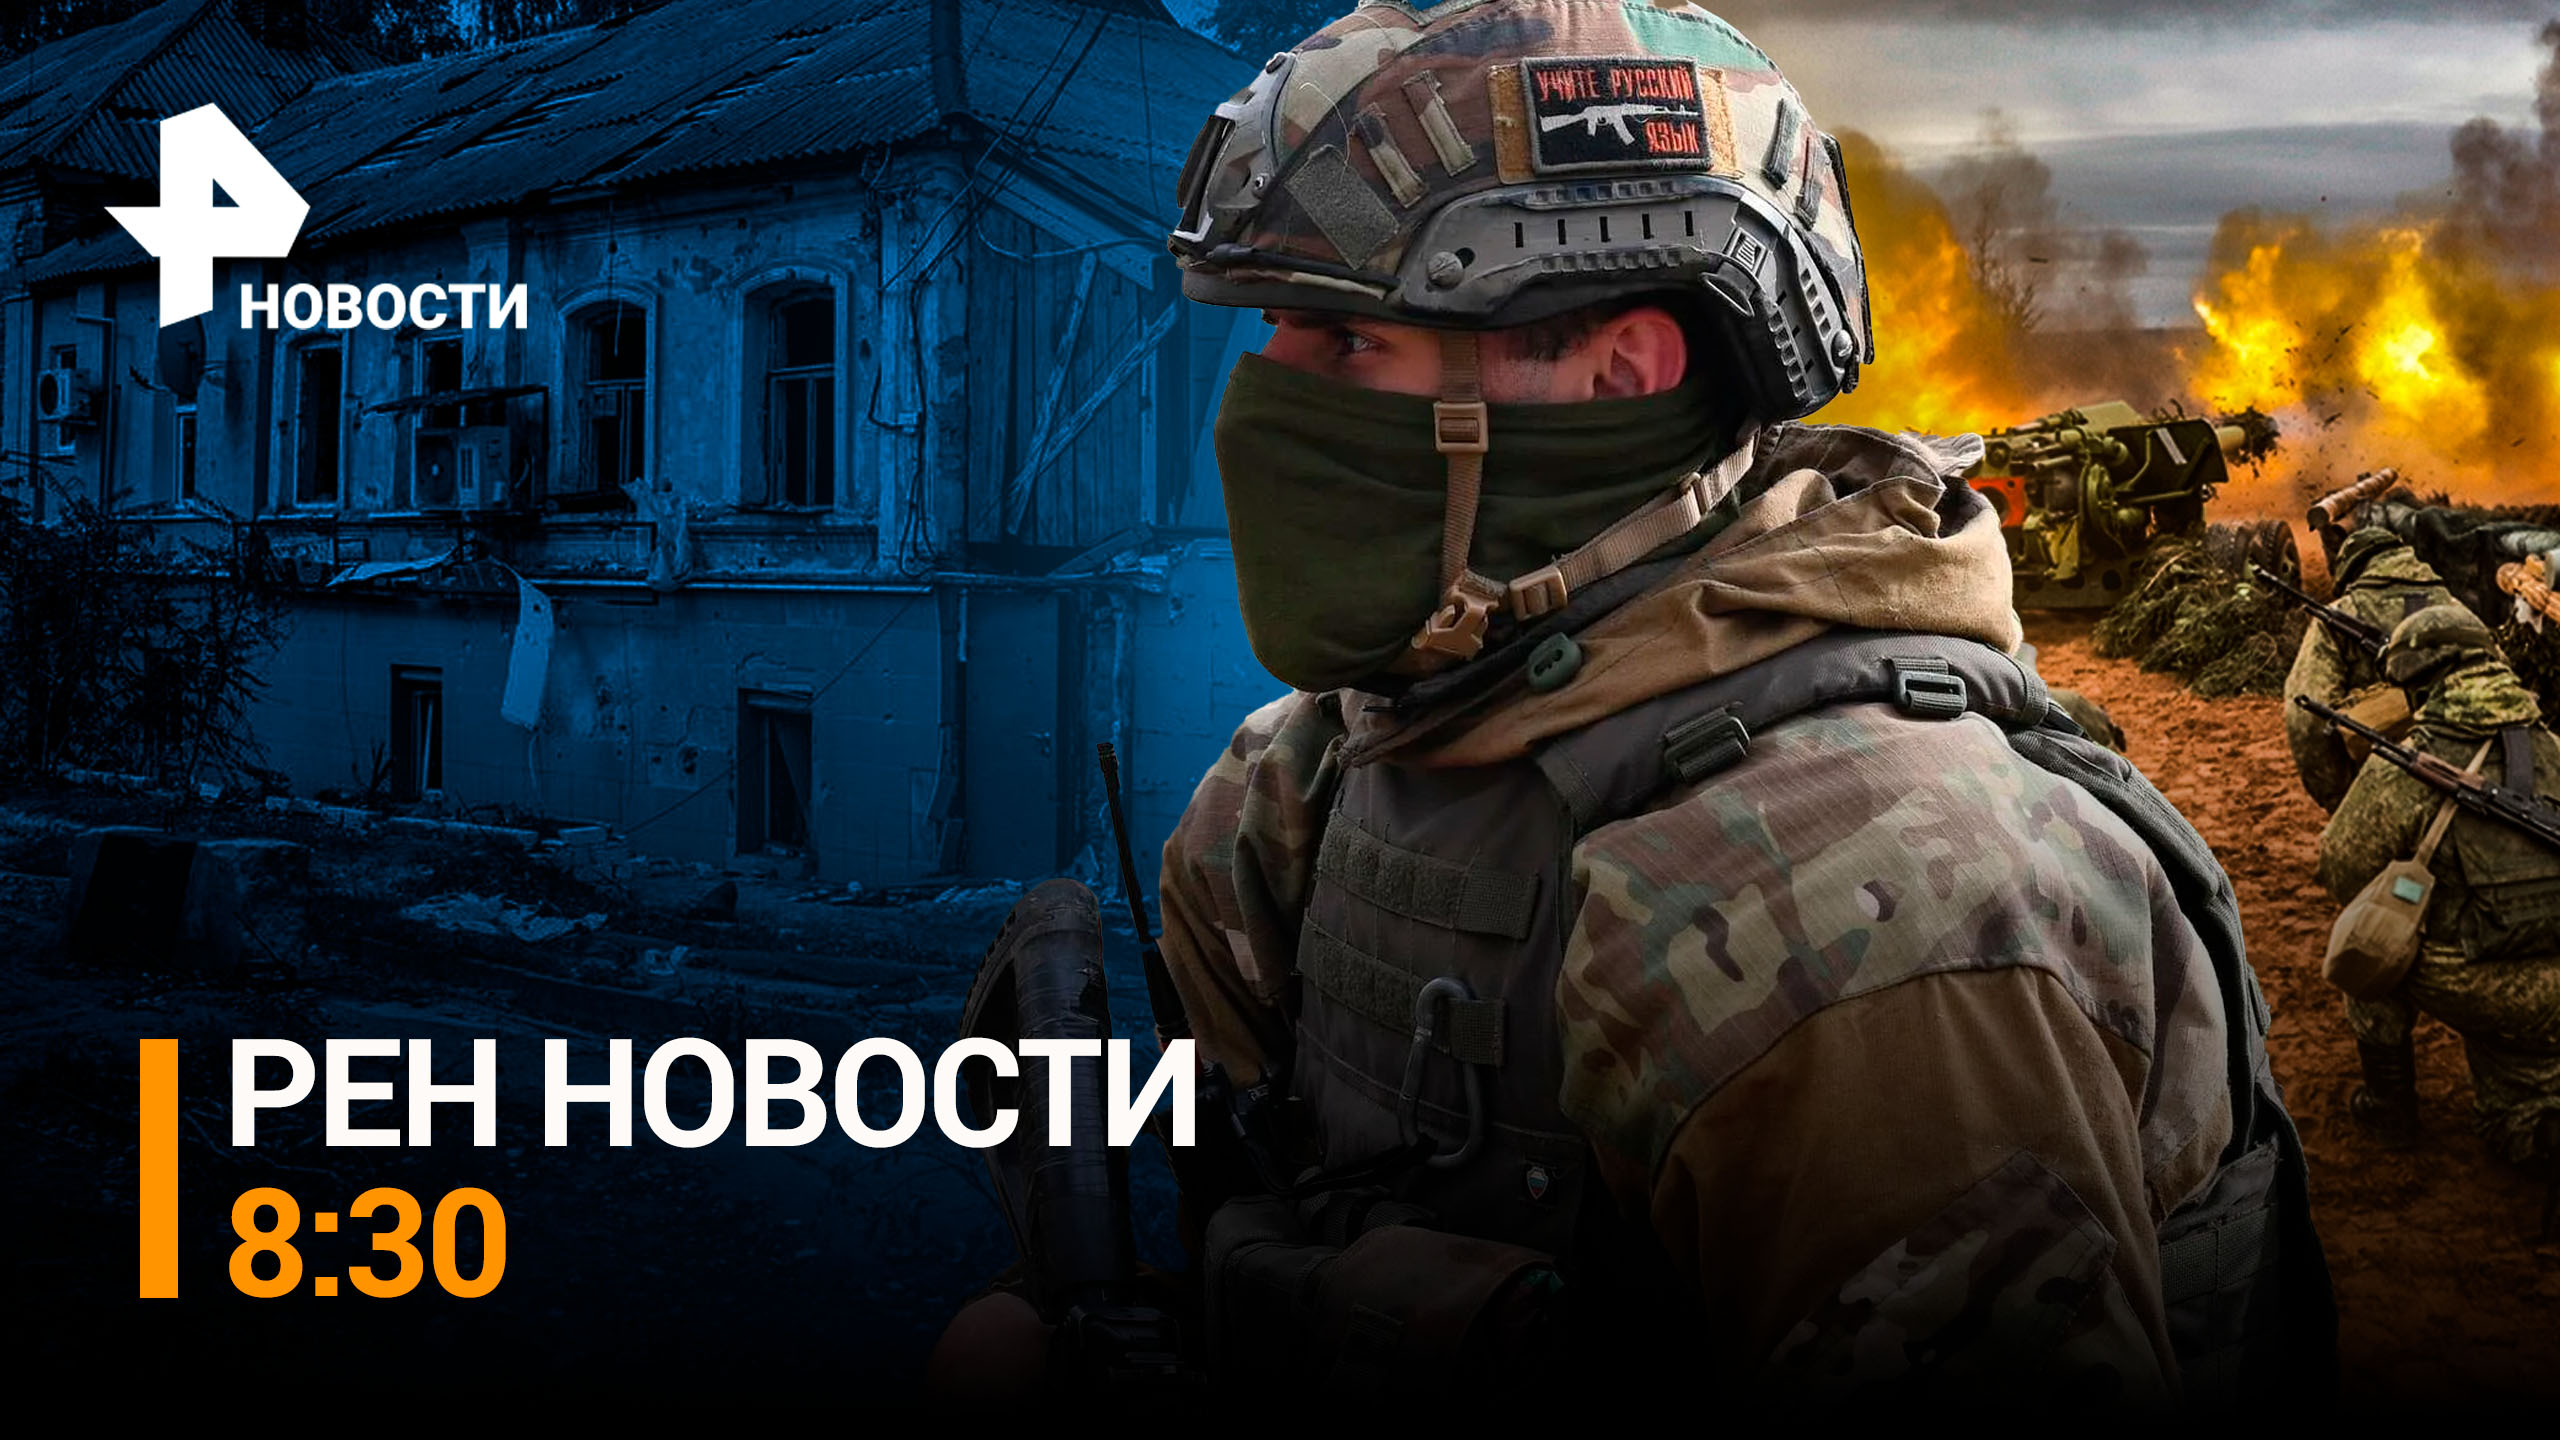 Наши военные не дали ВСУ обновить военный состав Купянском направлении / РЕН Новости 8:30, 9.03.24